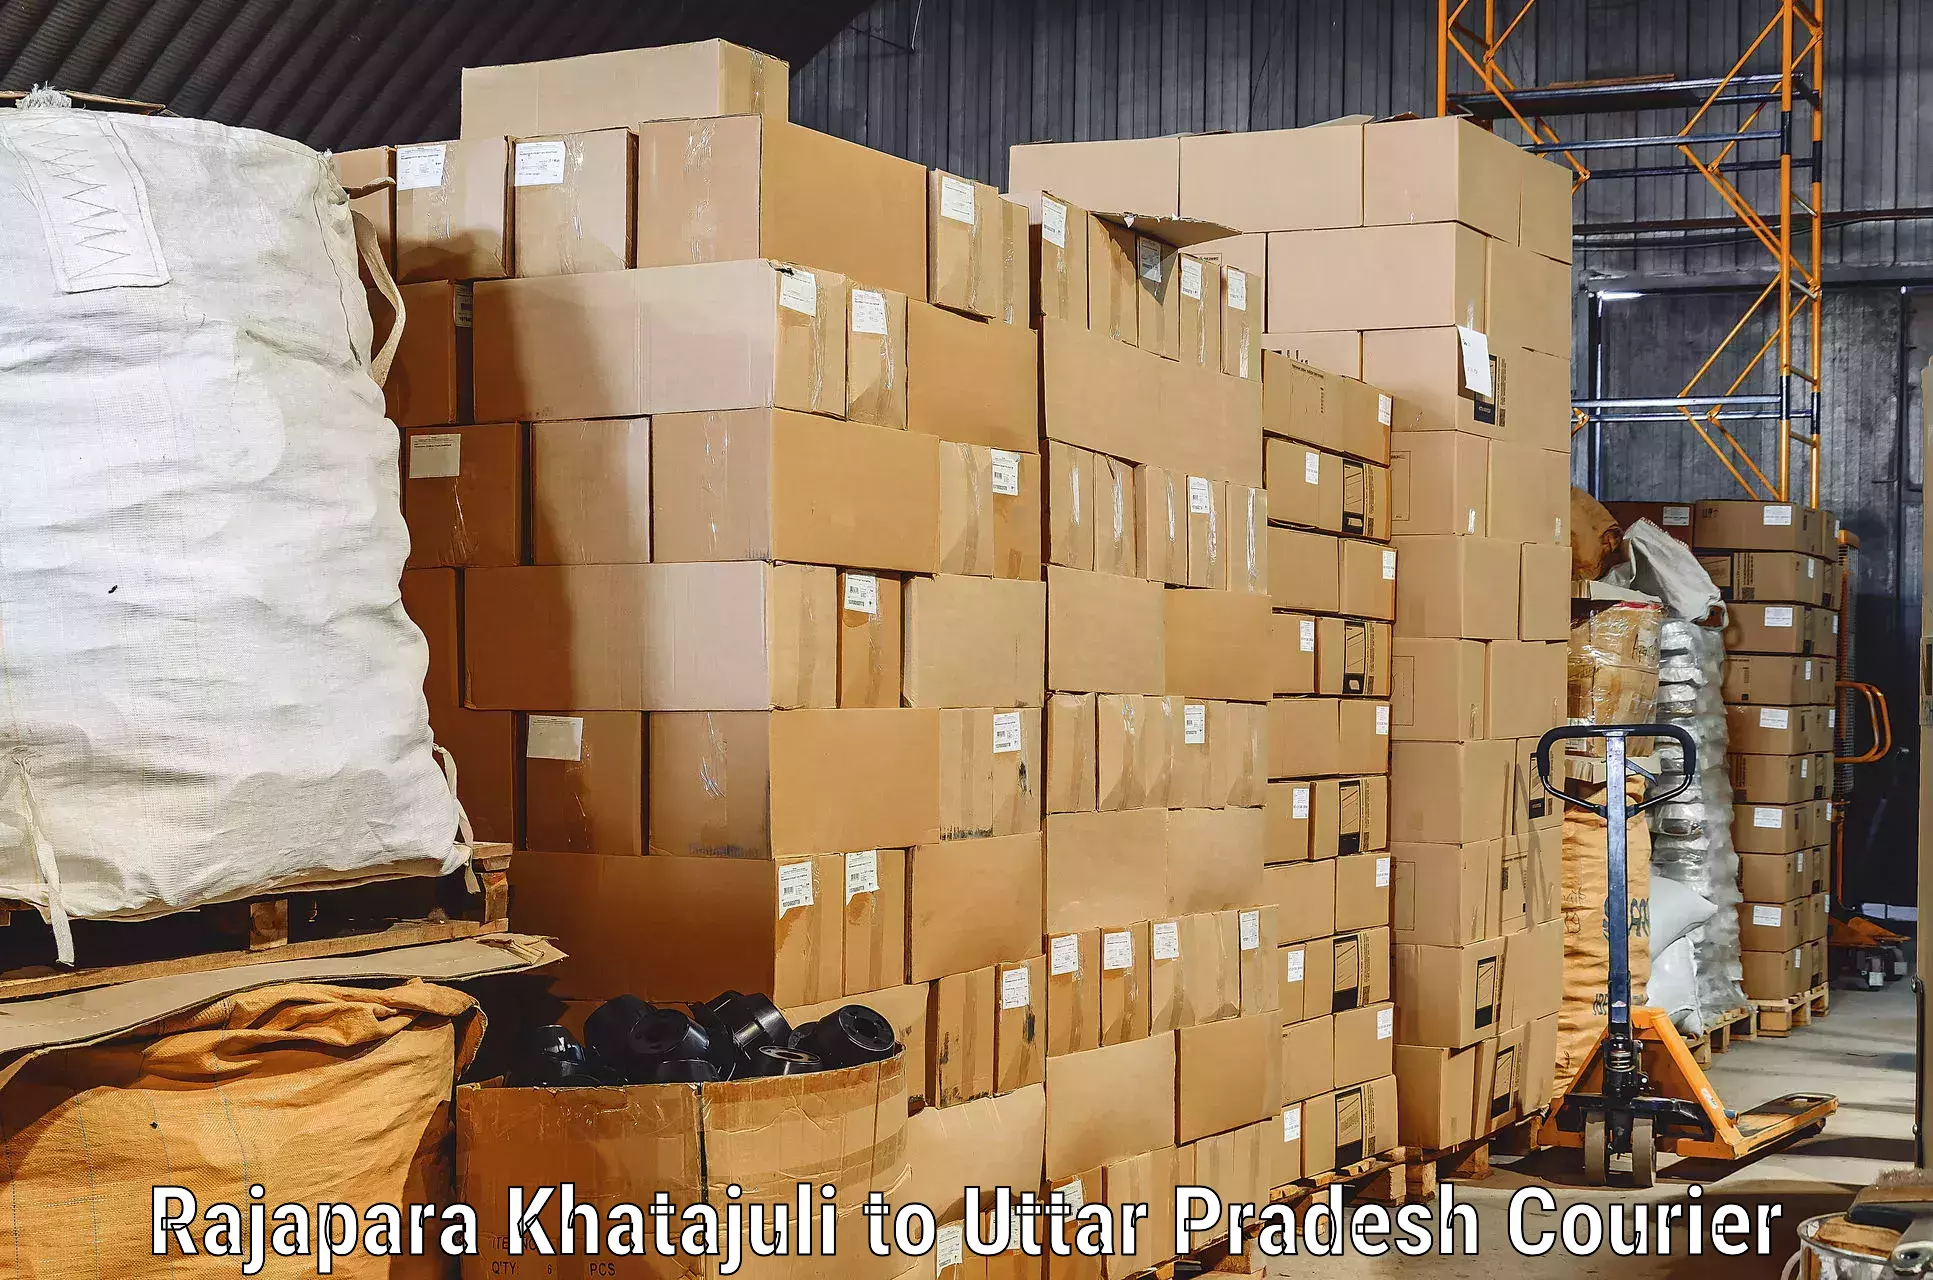 Furniture moving strategies Rajapara Khatajuli to Nichlaul